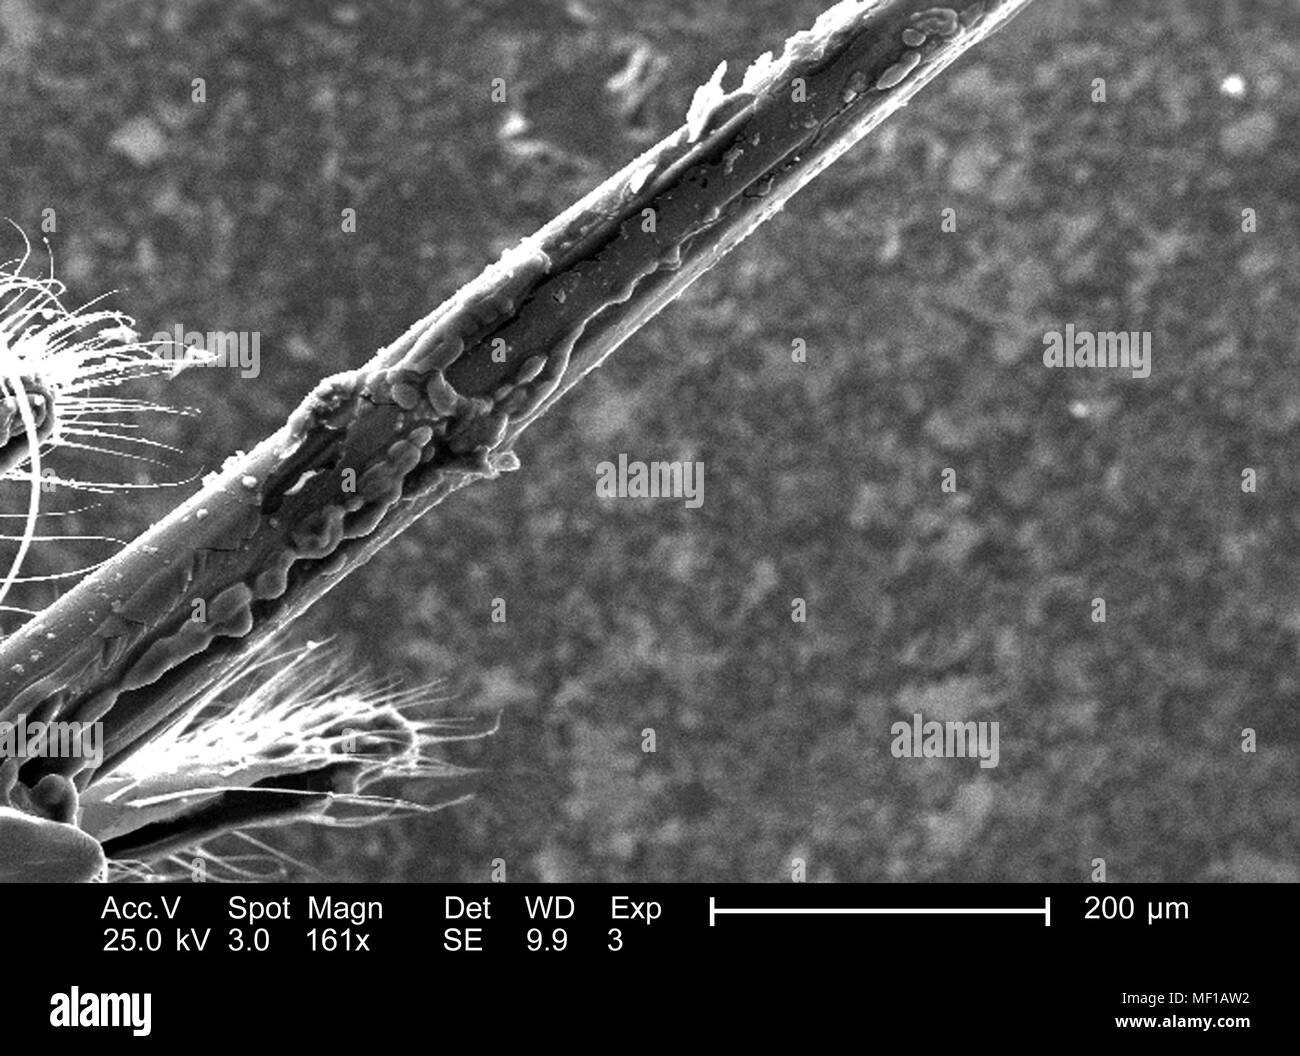 Ultrastrutturali dettagli morfologiche di un misterioso hymenopteran insetto apparato stinger, raffigurato nella 161x di scansione ingrandita al microscopio elettronico (SEM) immagine, 2005. Immagine cortesia di centri per il controllo delle malattie (CDC) / Janice Haney Carr. () Foto Stock